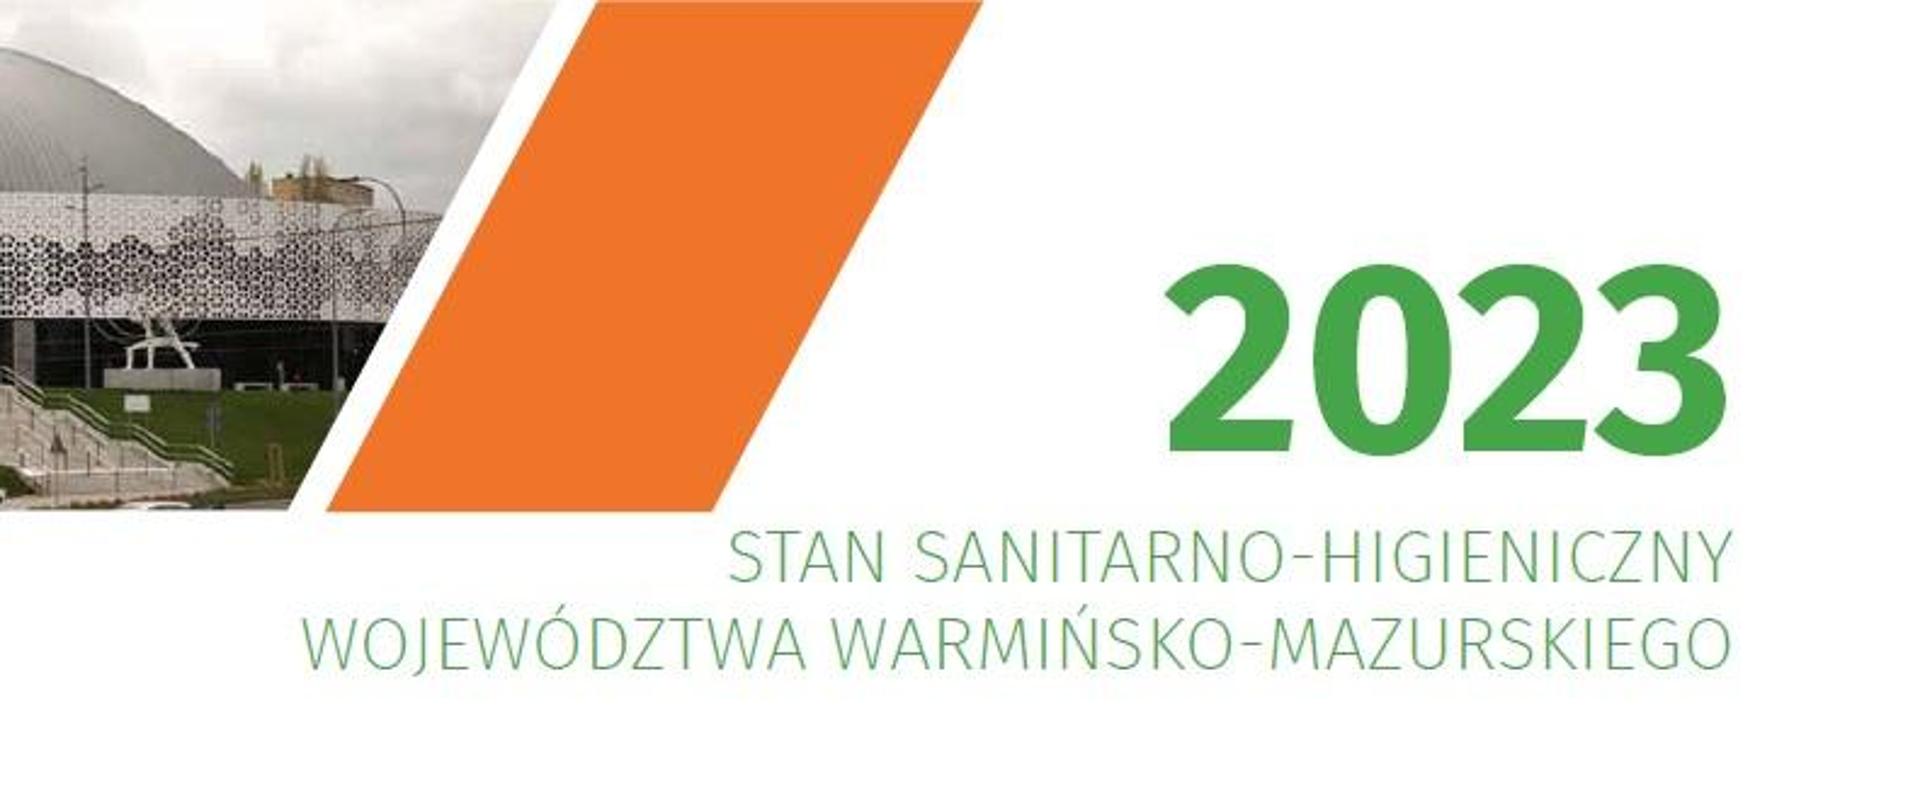 Fragment okładki raportu, na której po lewej stronie widać fotografię nowej hali Urania w Olsztynie i tytuł "Stan sanitarno-higieniczny województwa warmińsko-mazurskiego 2023"